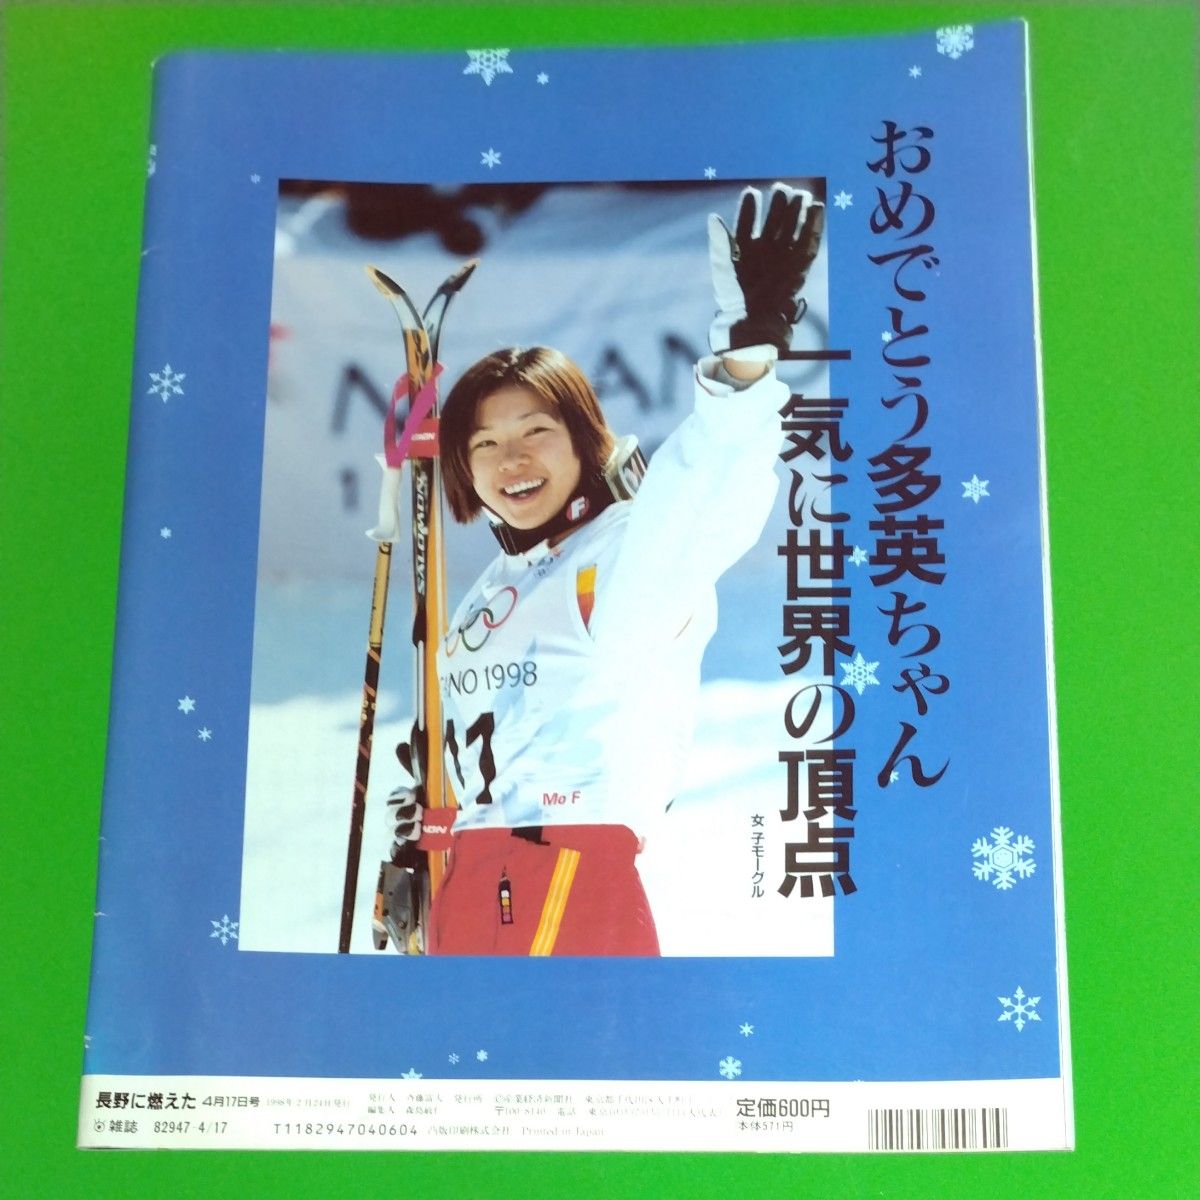 長野に燃えた 冬季五輪の熱い16日間 サンケイスポーツ Gallop 緊急増刊 完全保存版 1998年2月24日発行